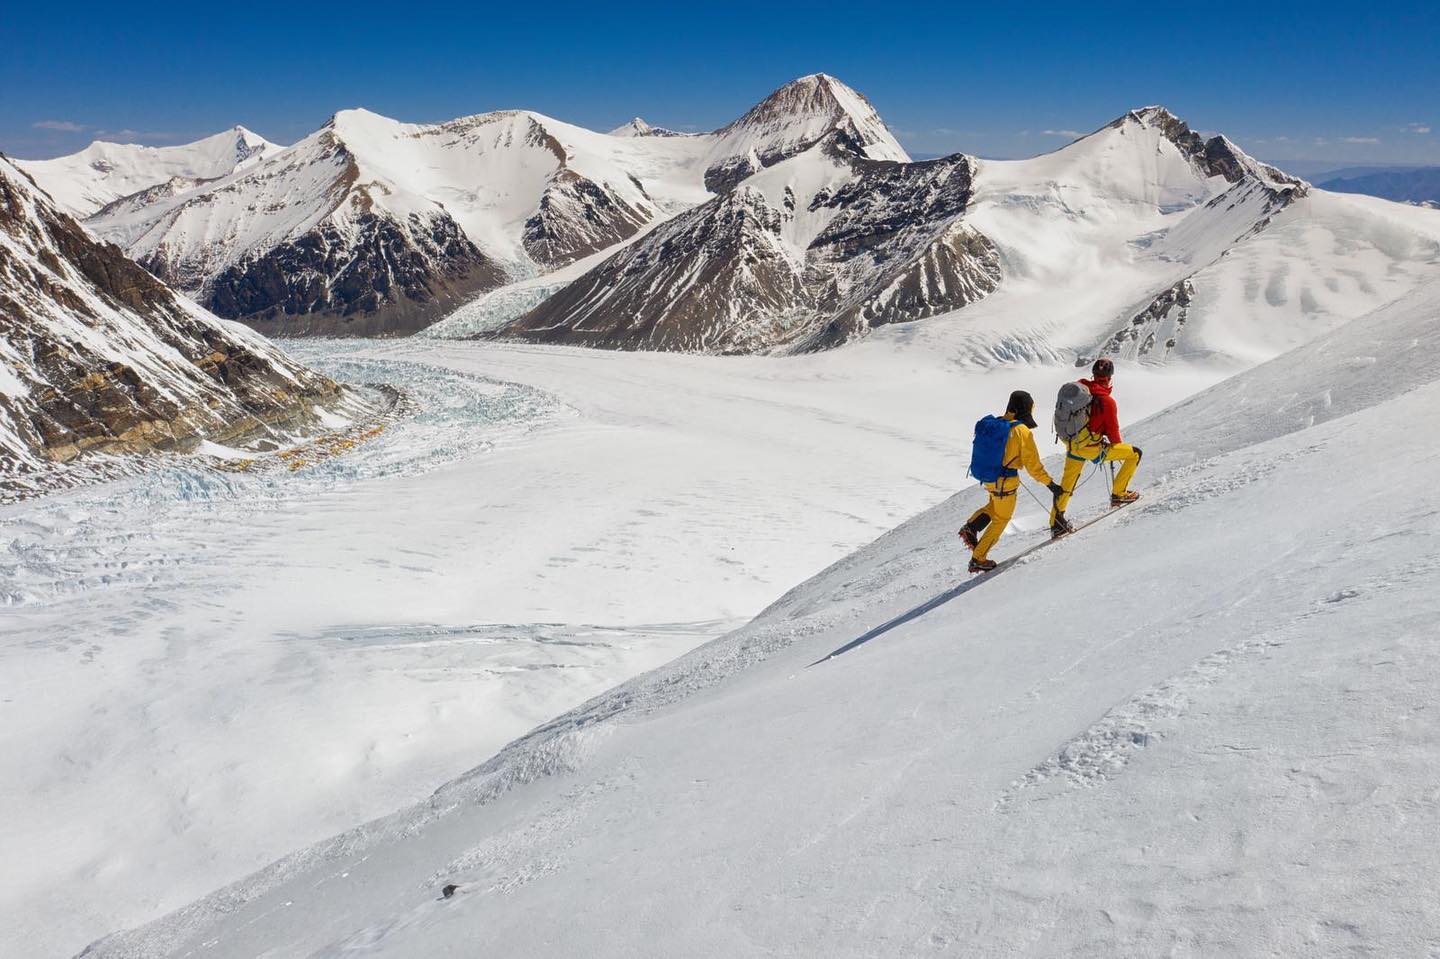 Кори Ричардс (Cory Richards) и Эстебан "Топо" Мена (Esteban "Topo" Mena) во время акклиматизационного выхода на Эверест. Жёлтые точки на фото - палатки передового базового лагеря. Фото Keith Ladzinski